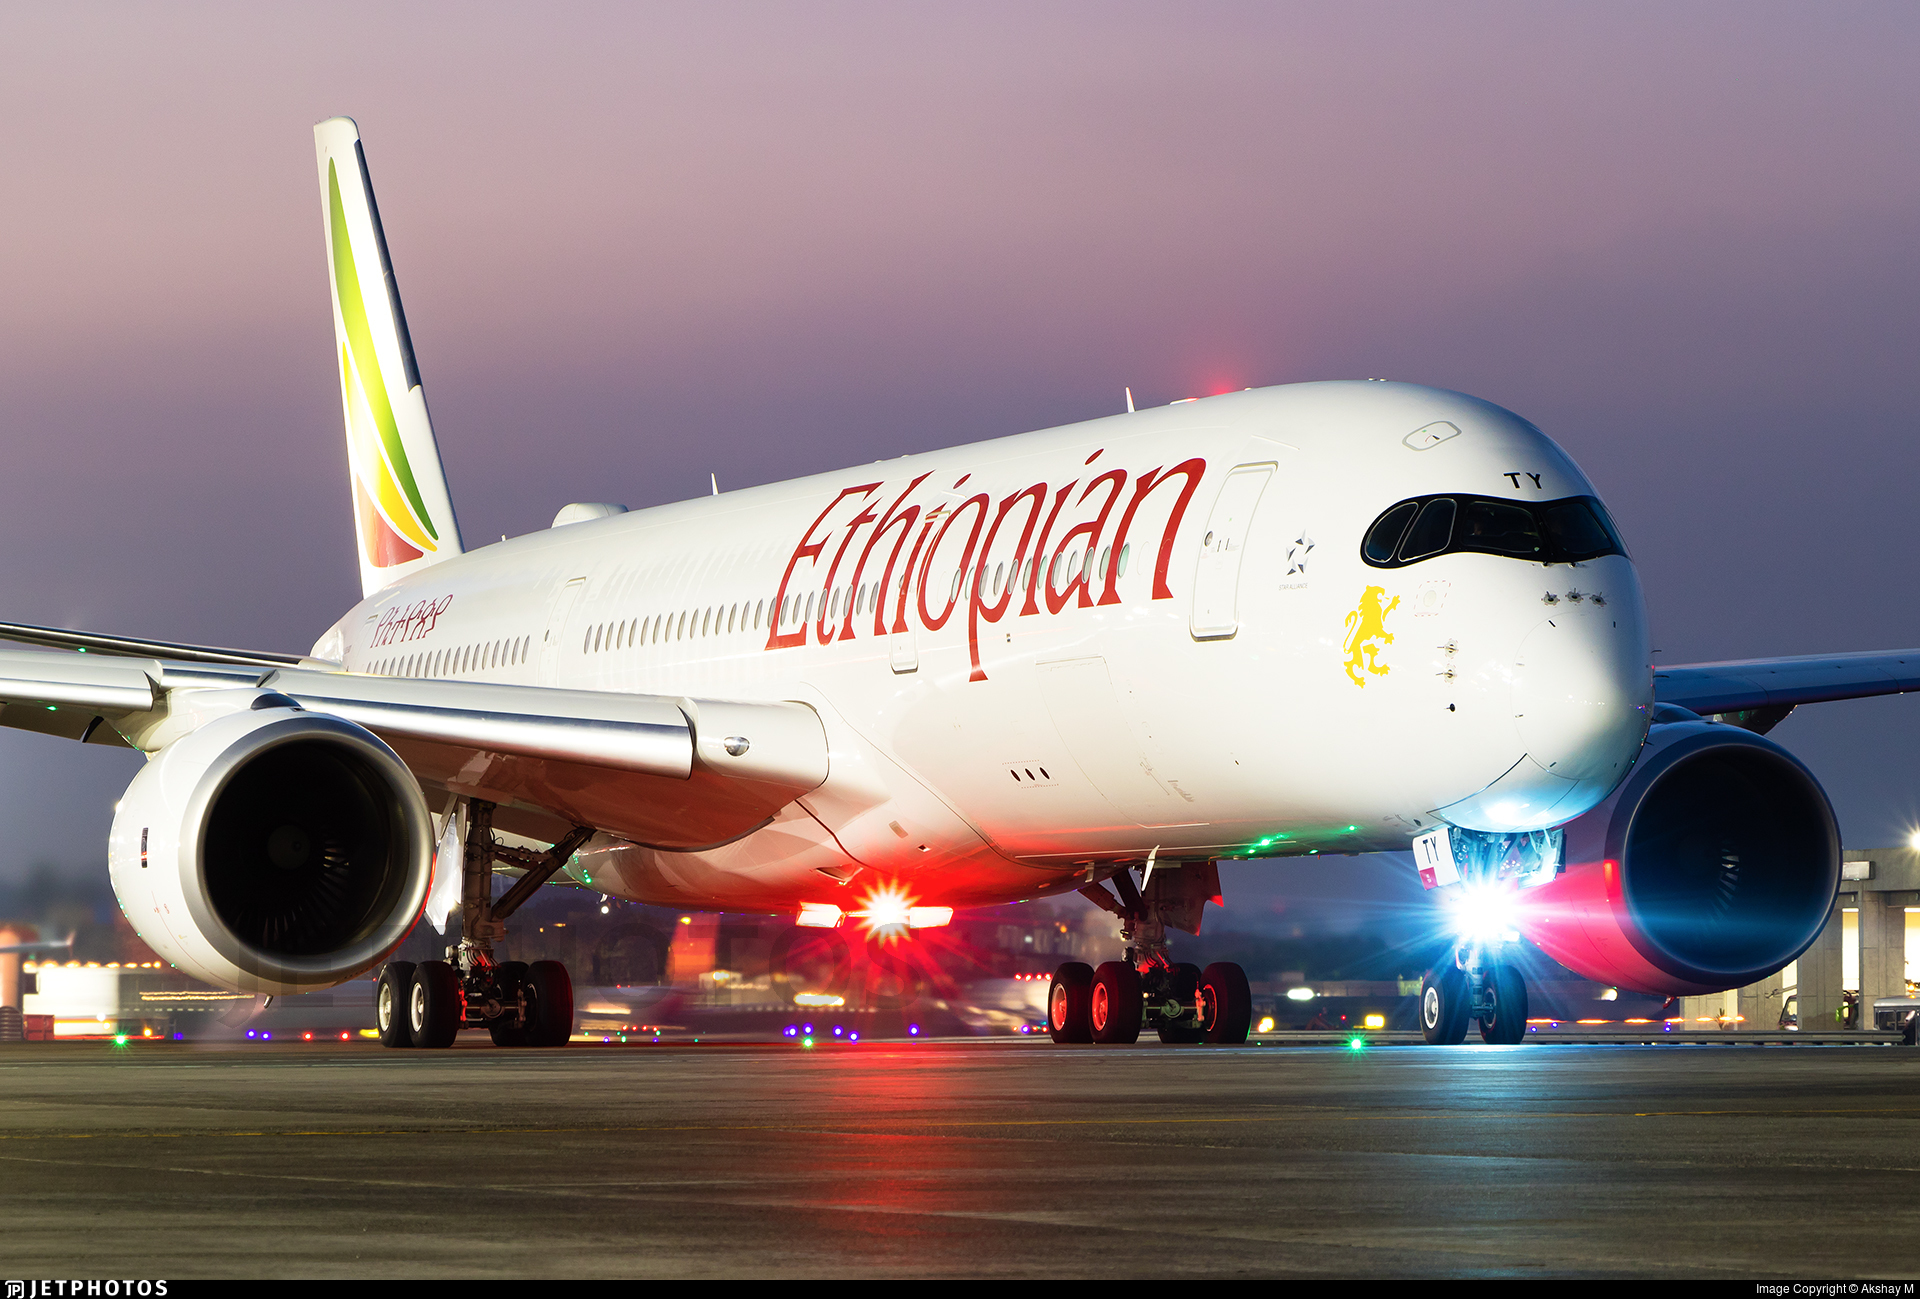 Πτώση αεροπλάνου της Ethiopian: Με πανικοβλημένη φωνή ζητούσε ο πιλότος να επιστρέψει ενώ η ταχύτητα μεγάλωνε αφύσικα